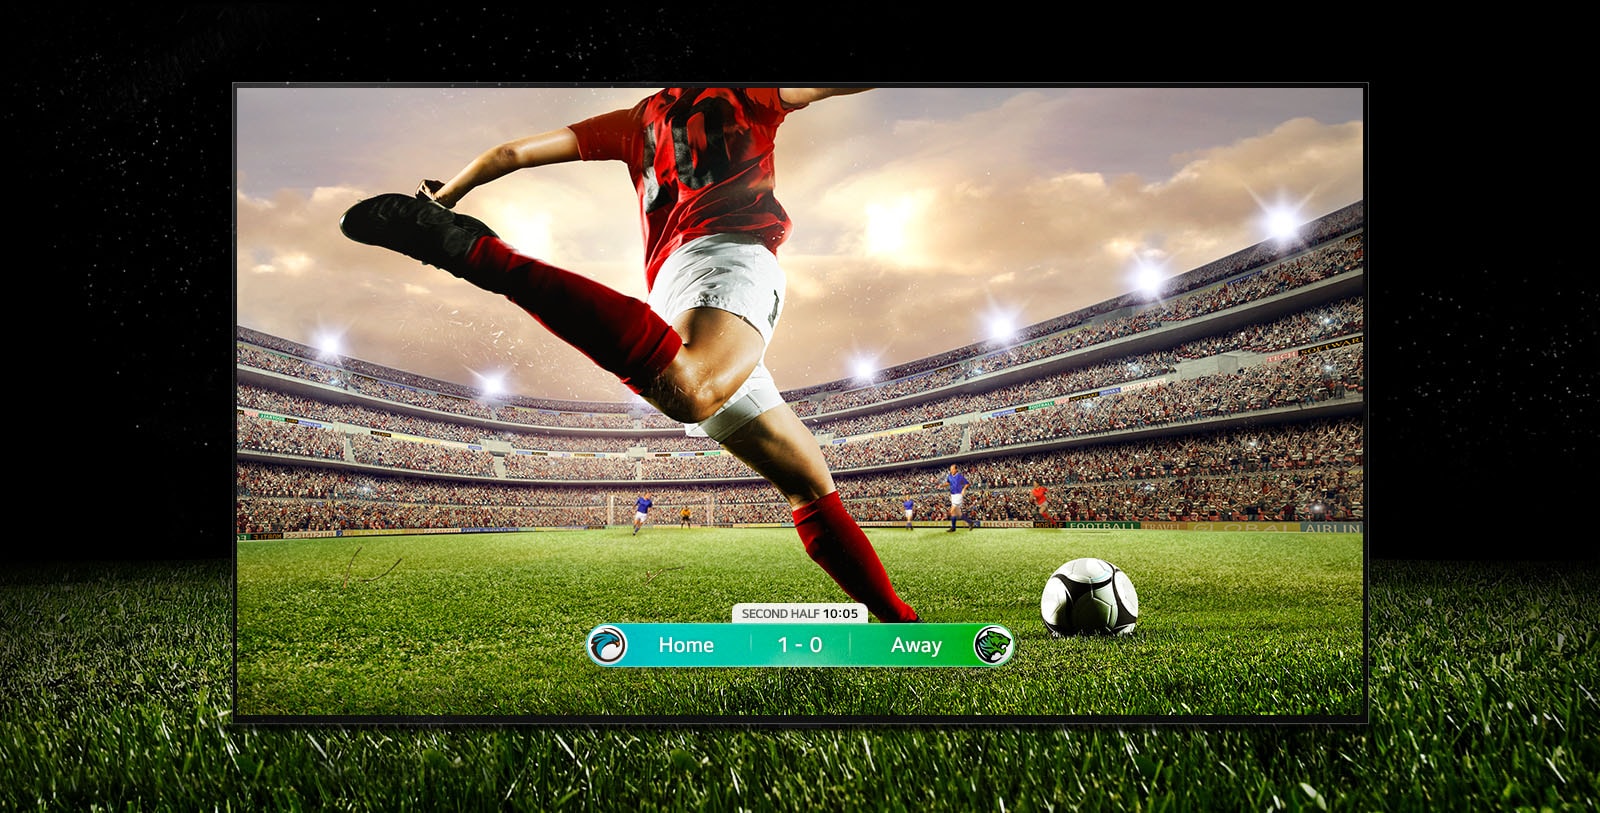 Slika zaslona, ​​ki prikazuje nogometno tekmo z igralcem v rdečem pasu, ki bo igral z žogo.  Rezultat tekme je viden na dnu zaslona.  Zelena trava na igrišču sega čez zaslon v črno ozadje.